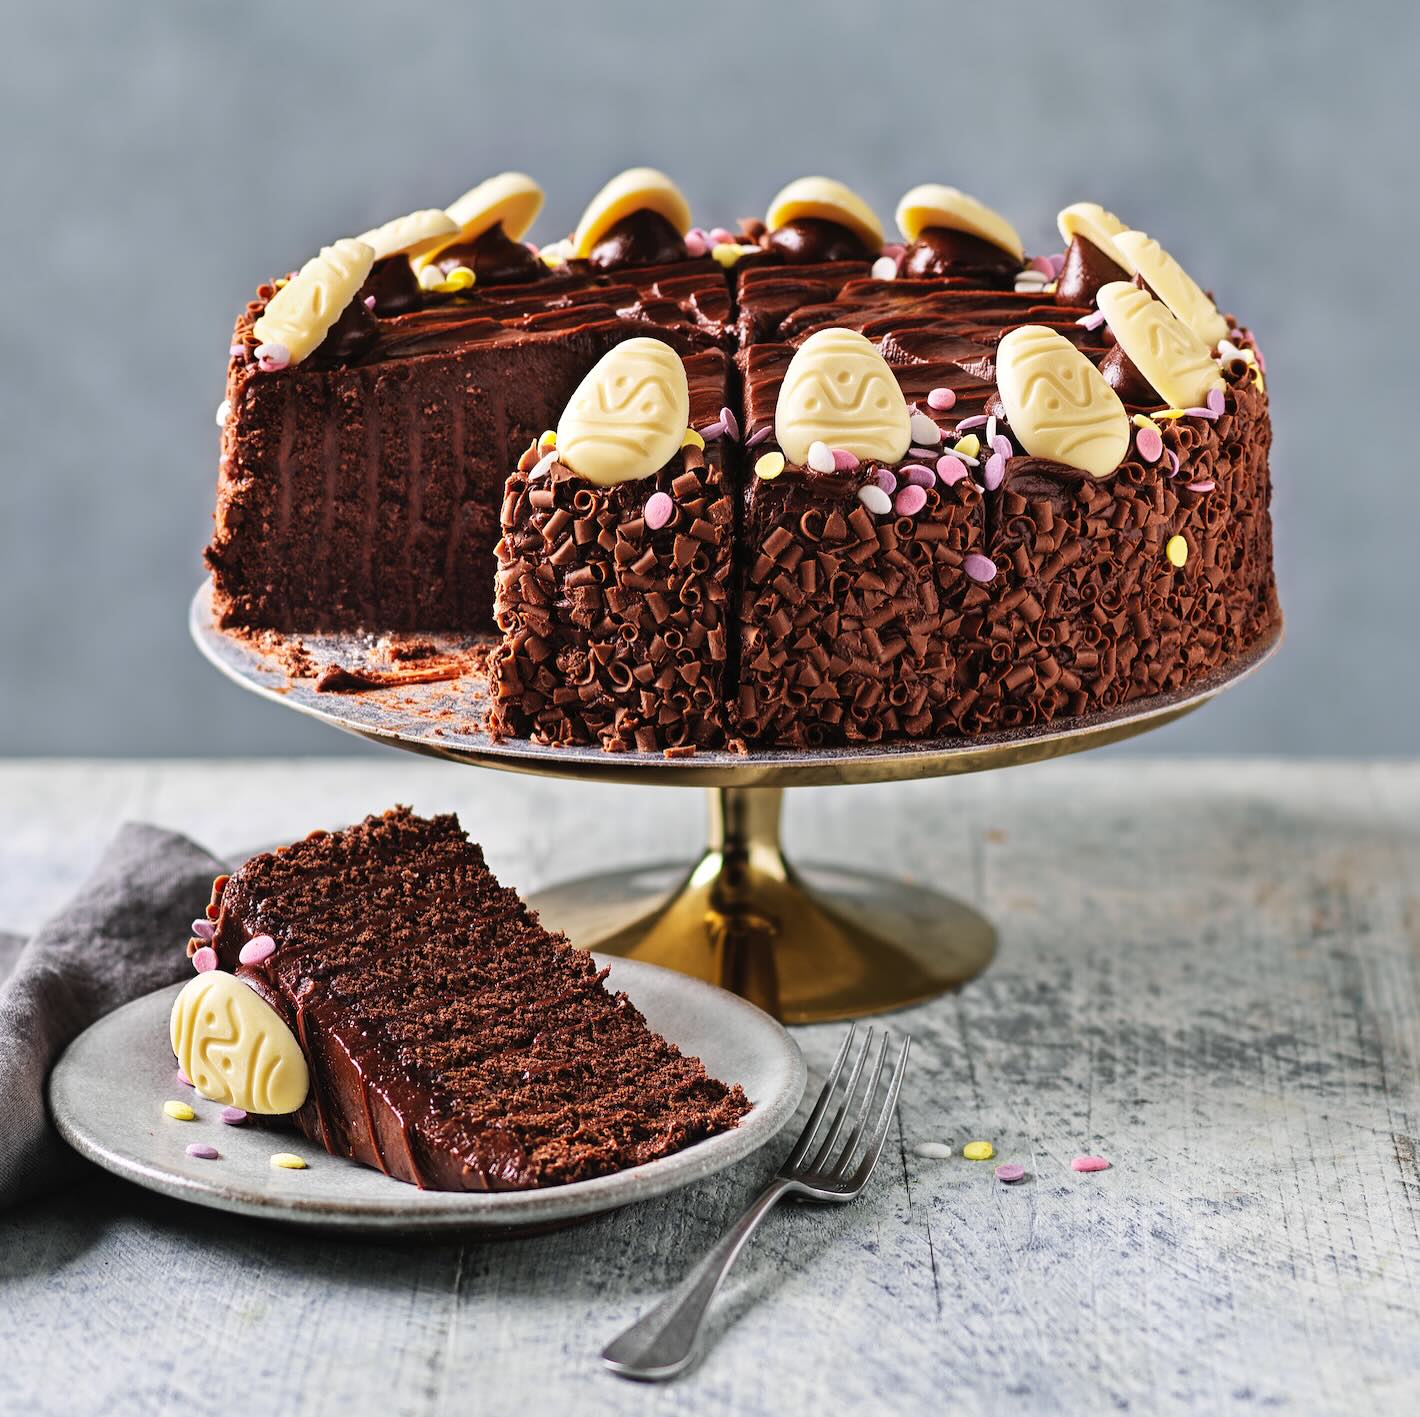 Der limitierte Schokoladen-Bouche-Kuchen wird in M&S-Cafés erhältlich sein